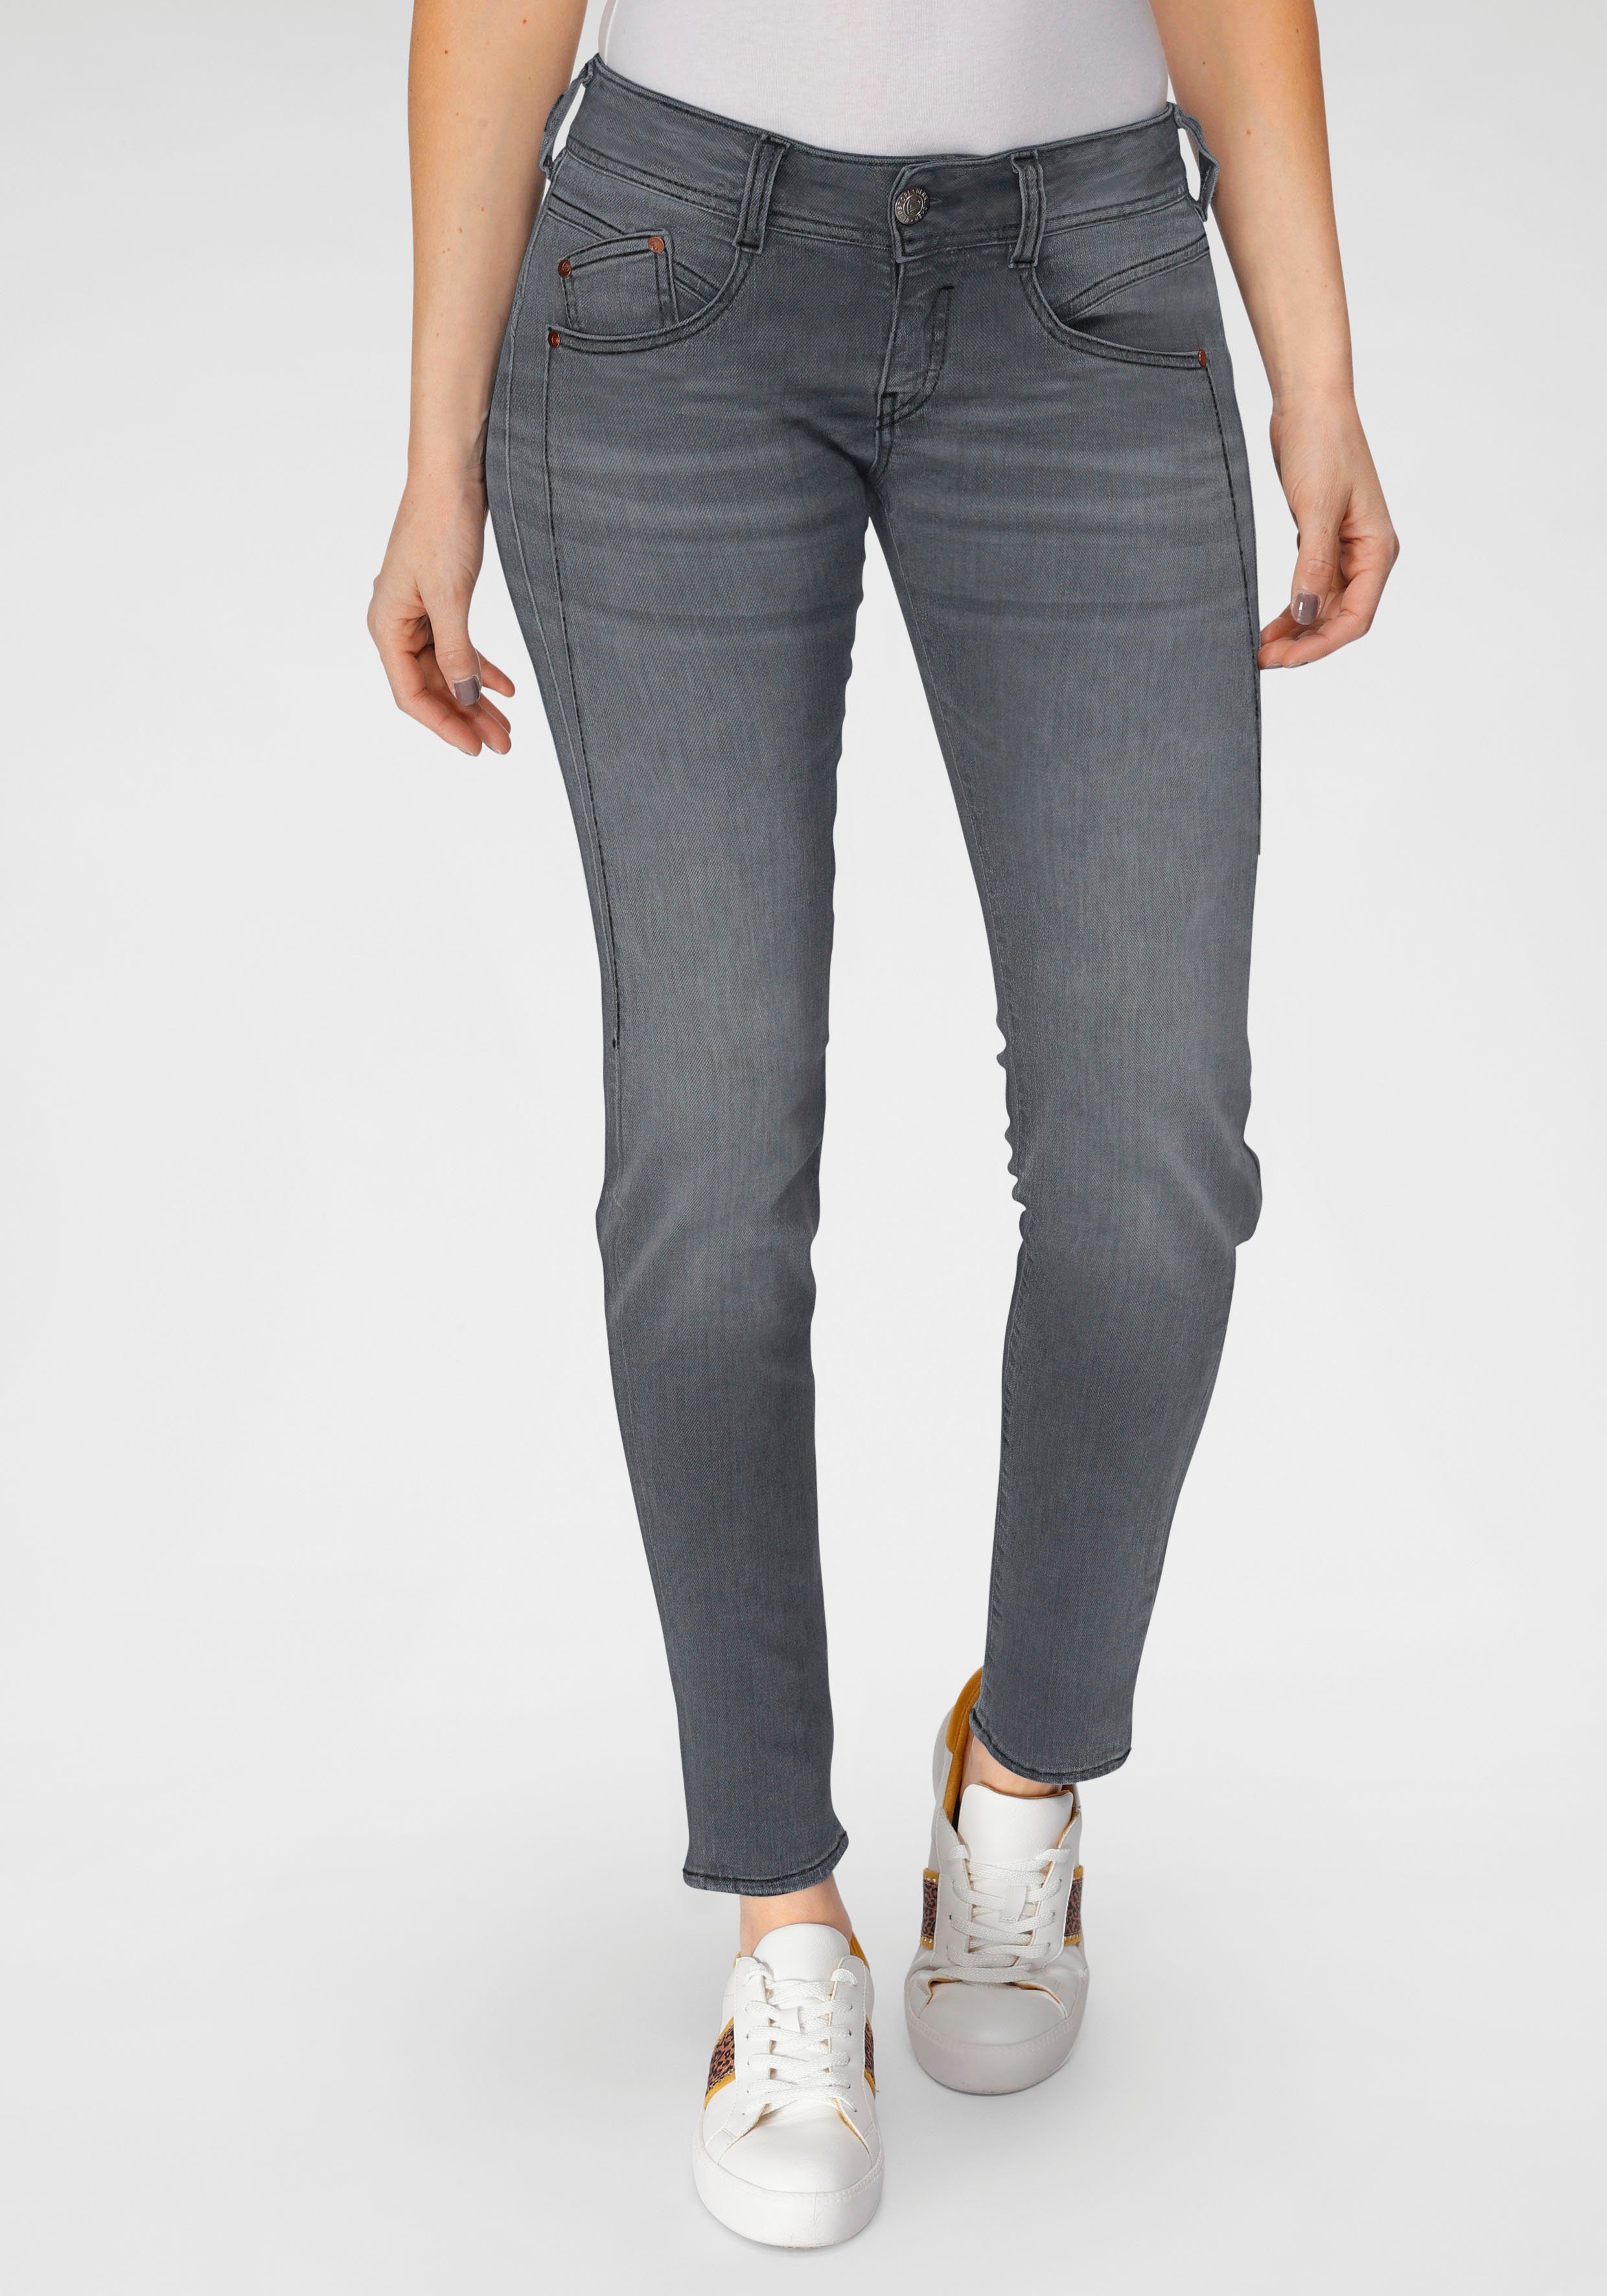 Herrlicher Slim-fit-Jeans GILA SLIM DENIM BLACK CASHMERE TOUCH mit  optischem Schlankeffekt dank Keileinsatz